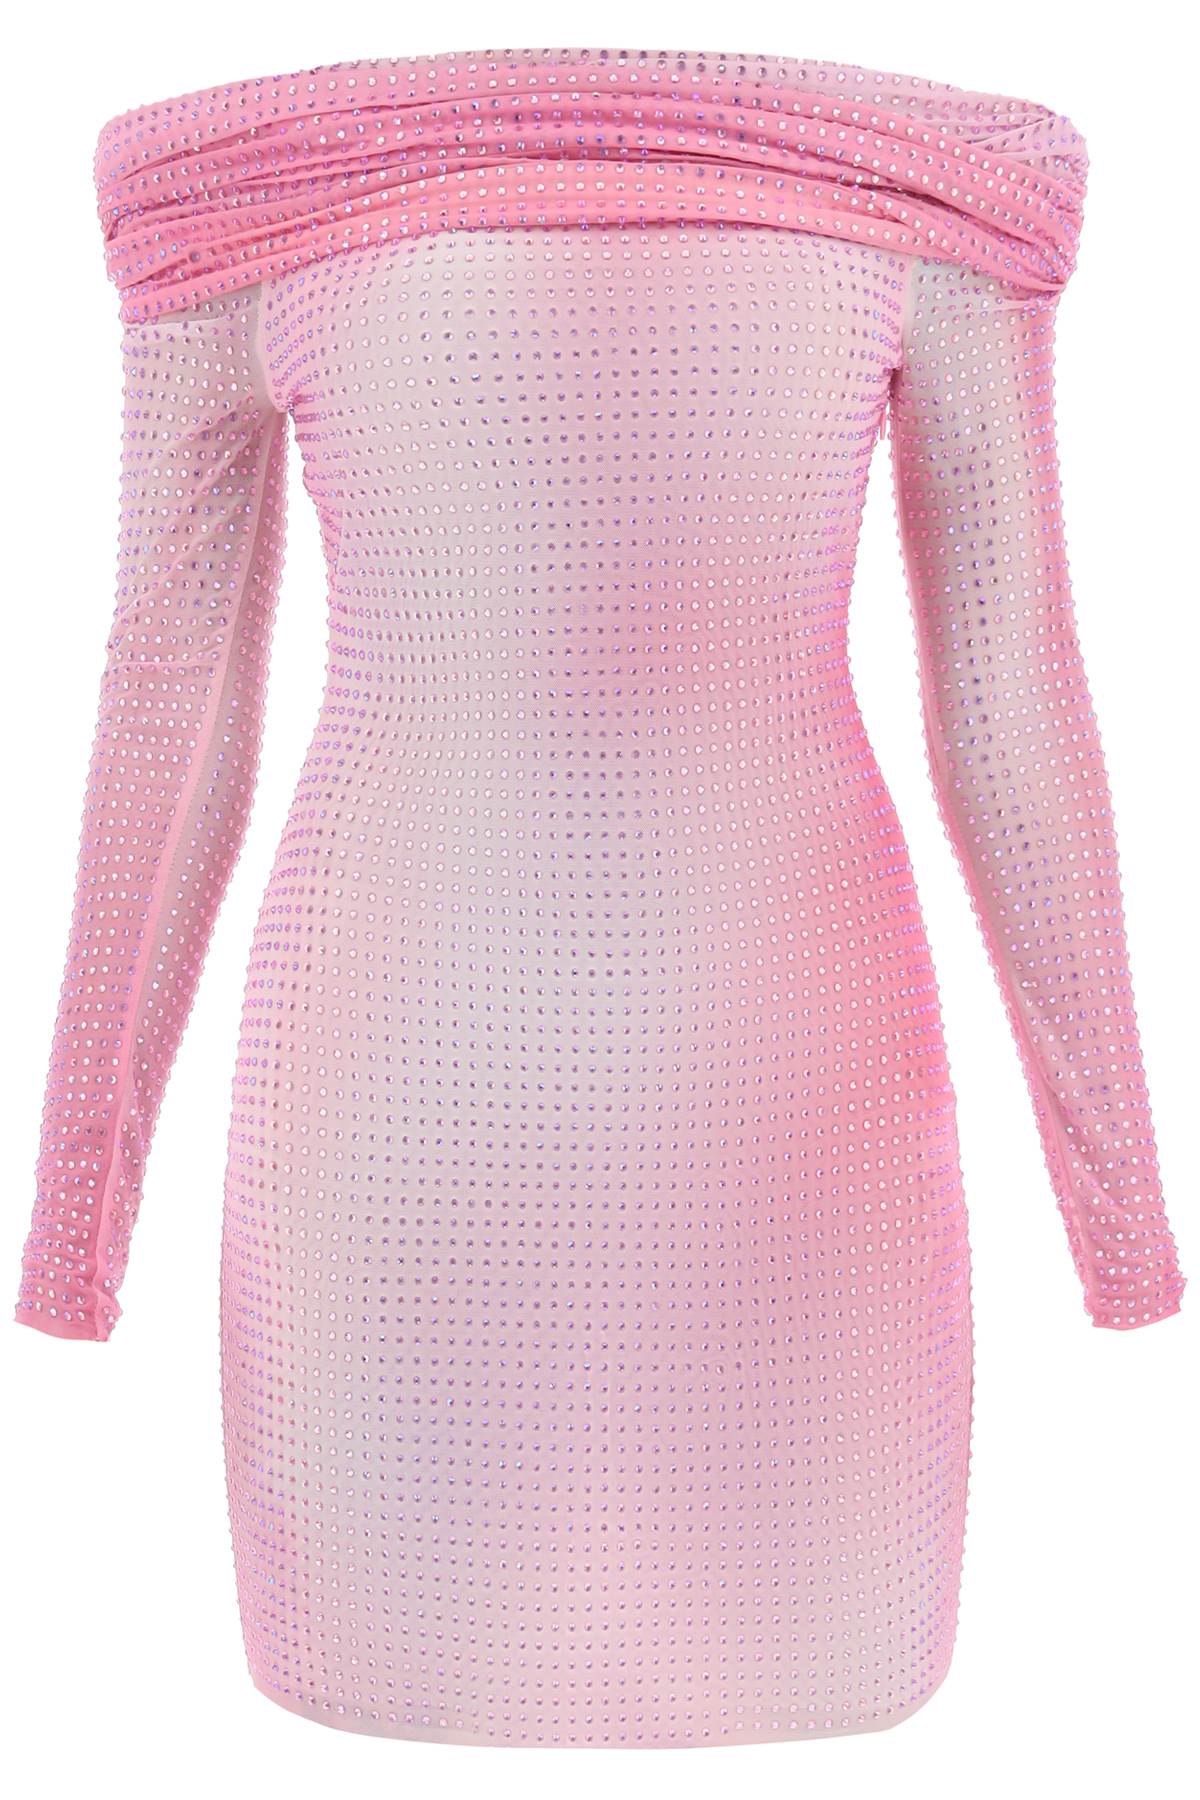 SELF-PORTRAIT Sparkling Off-Shoulder Mini Dress in Studded Pink Mesh